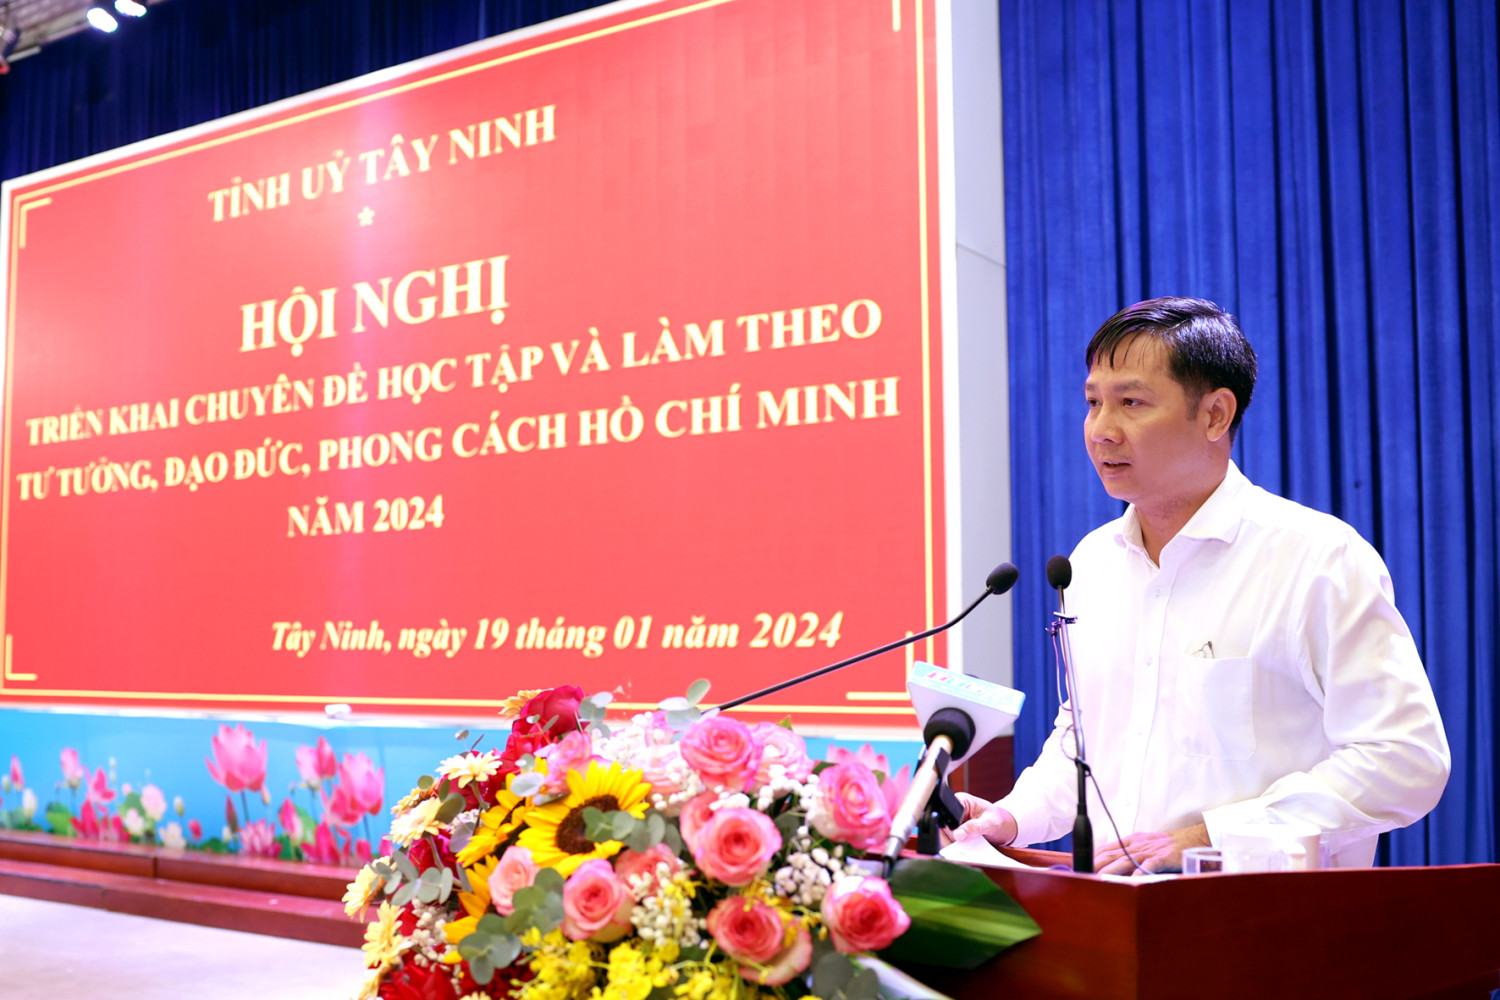 Tây Ninh triển khai chuyên đề học tập và làm theo tư tưởng, đạo đức, phong cách Hồ Chí Minh năm 2024